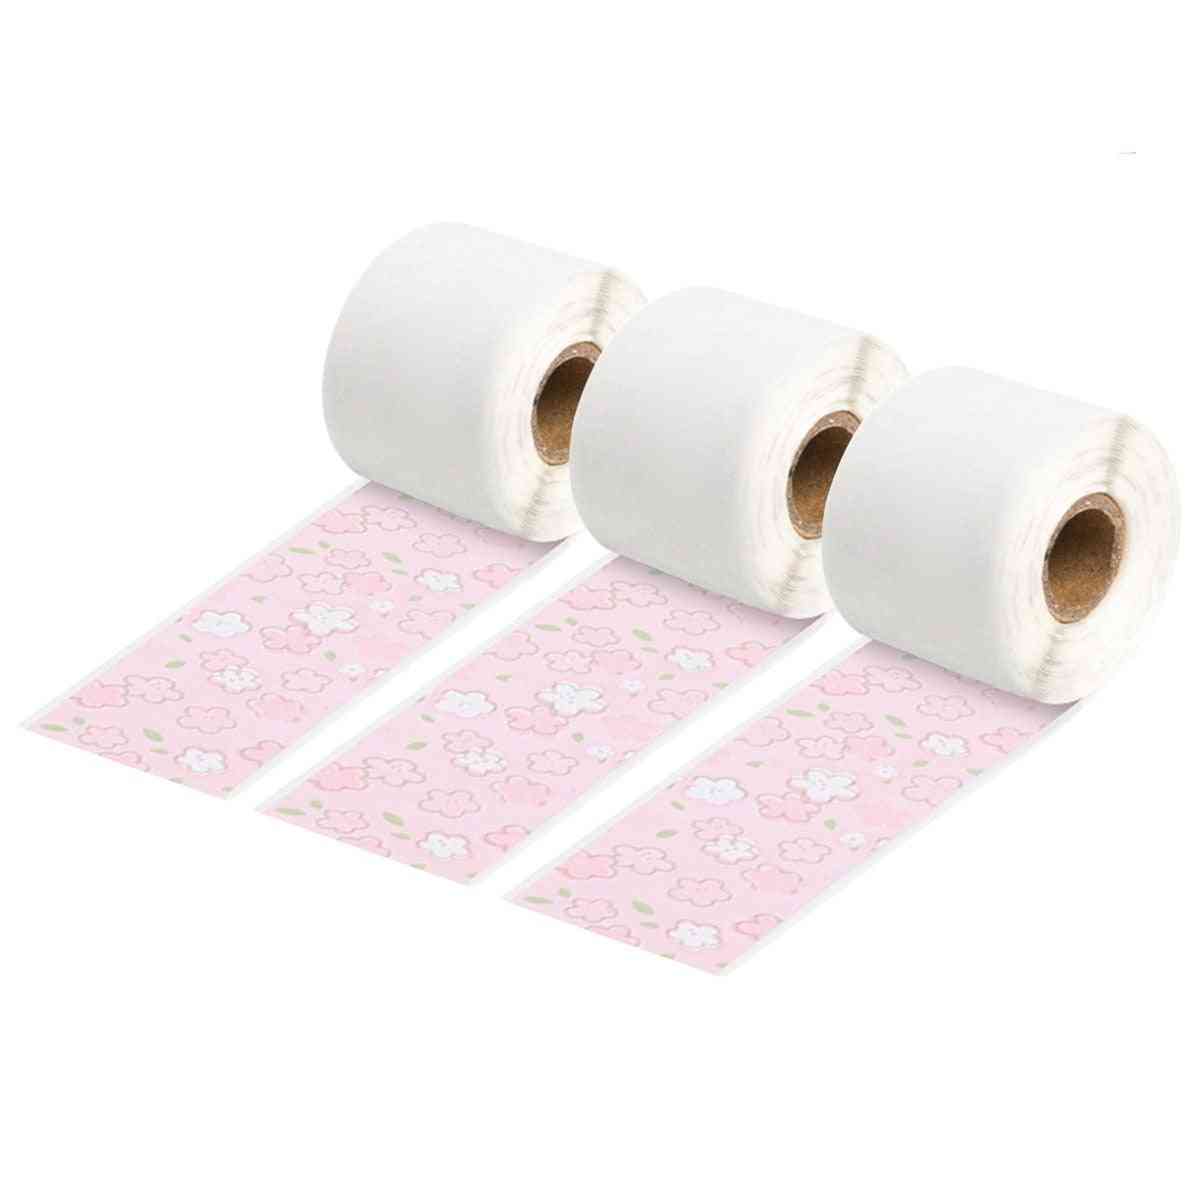 Self-adhesive Thermal Paper Rolls